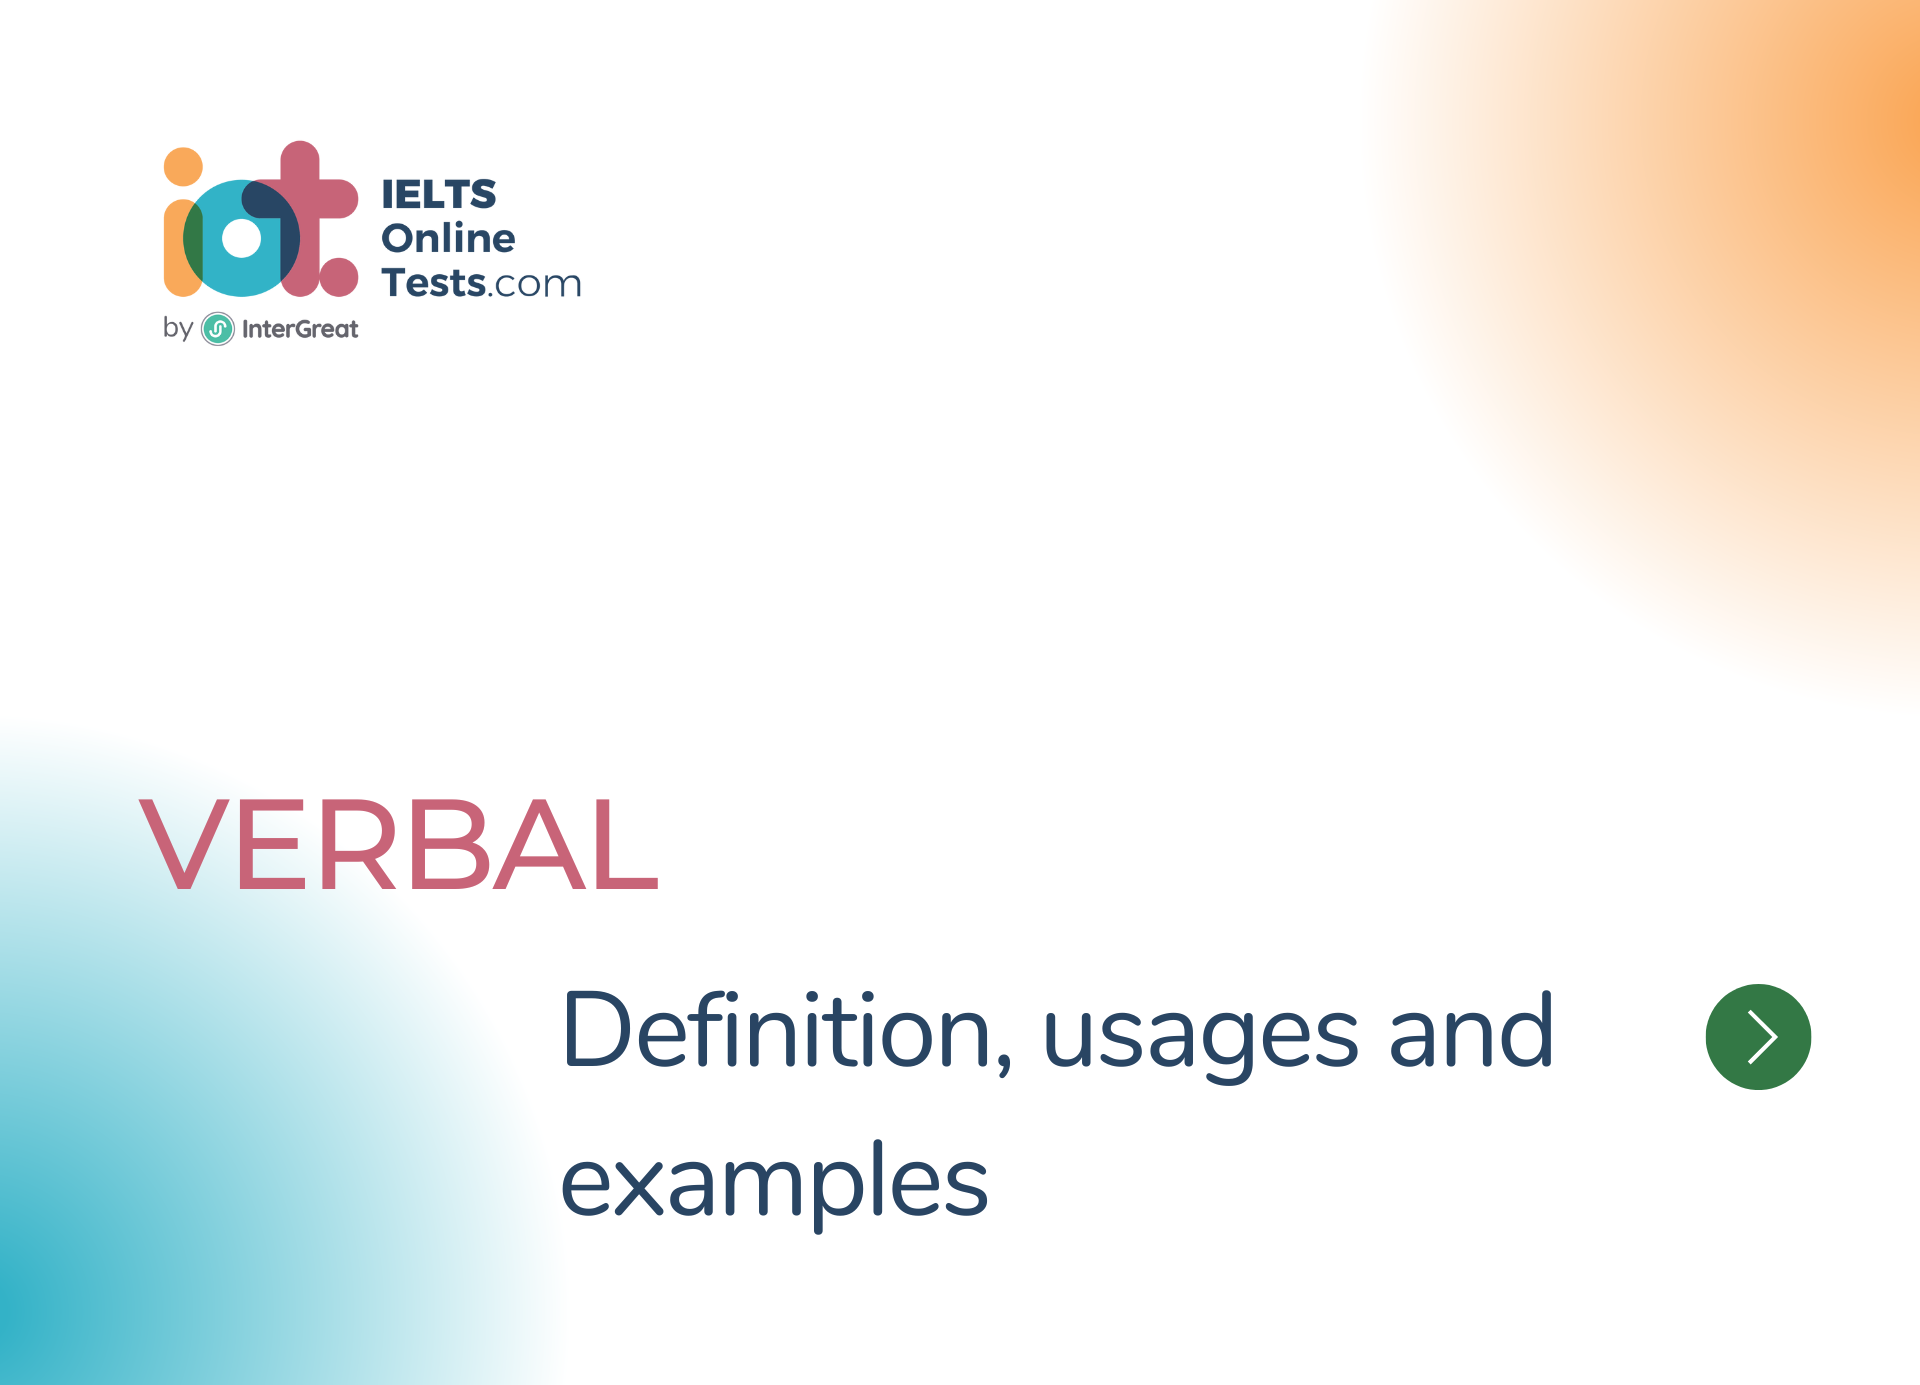 Verbal định nghĩa, cách sử dụng và ví dụ